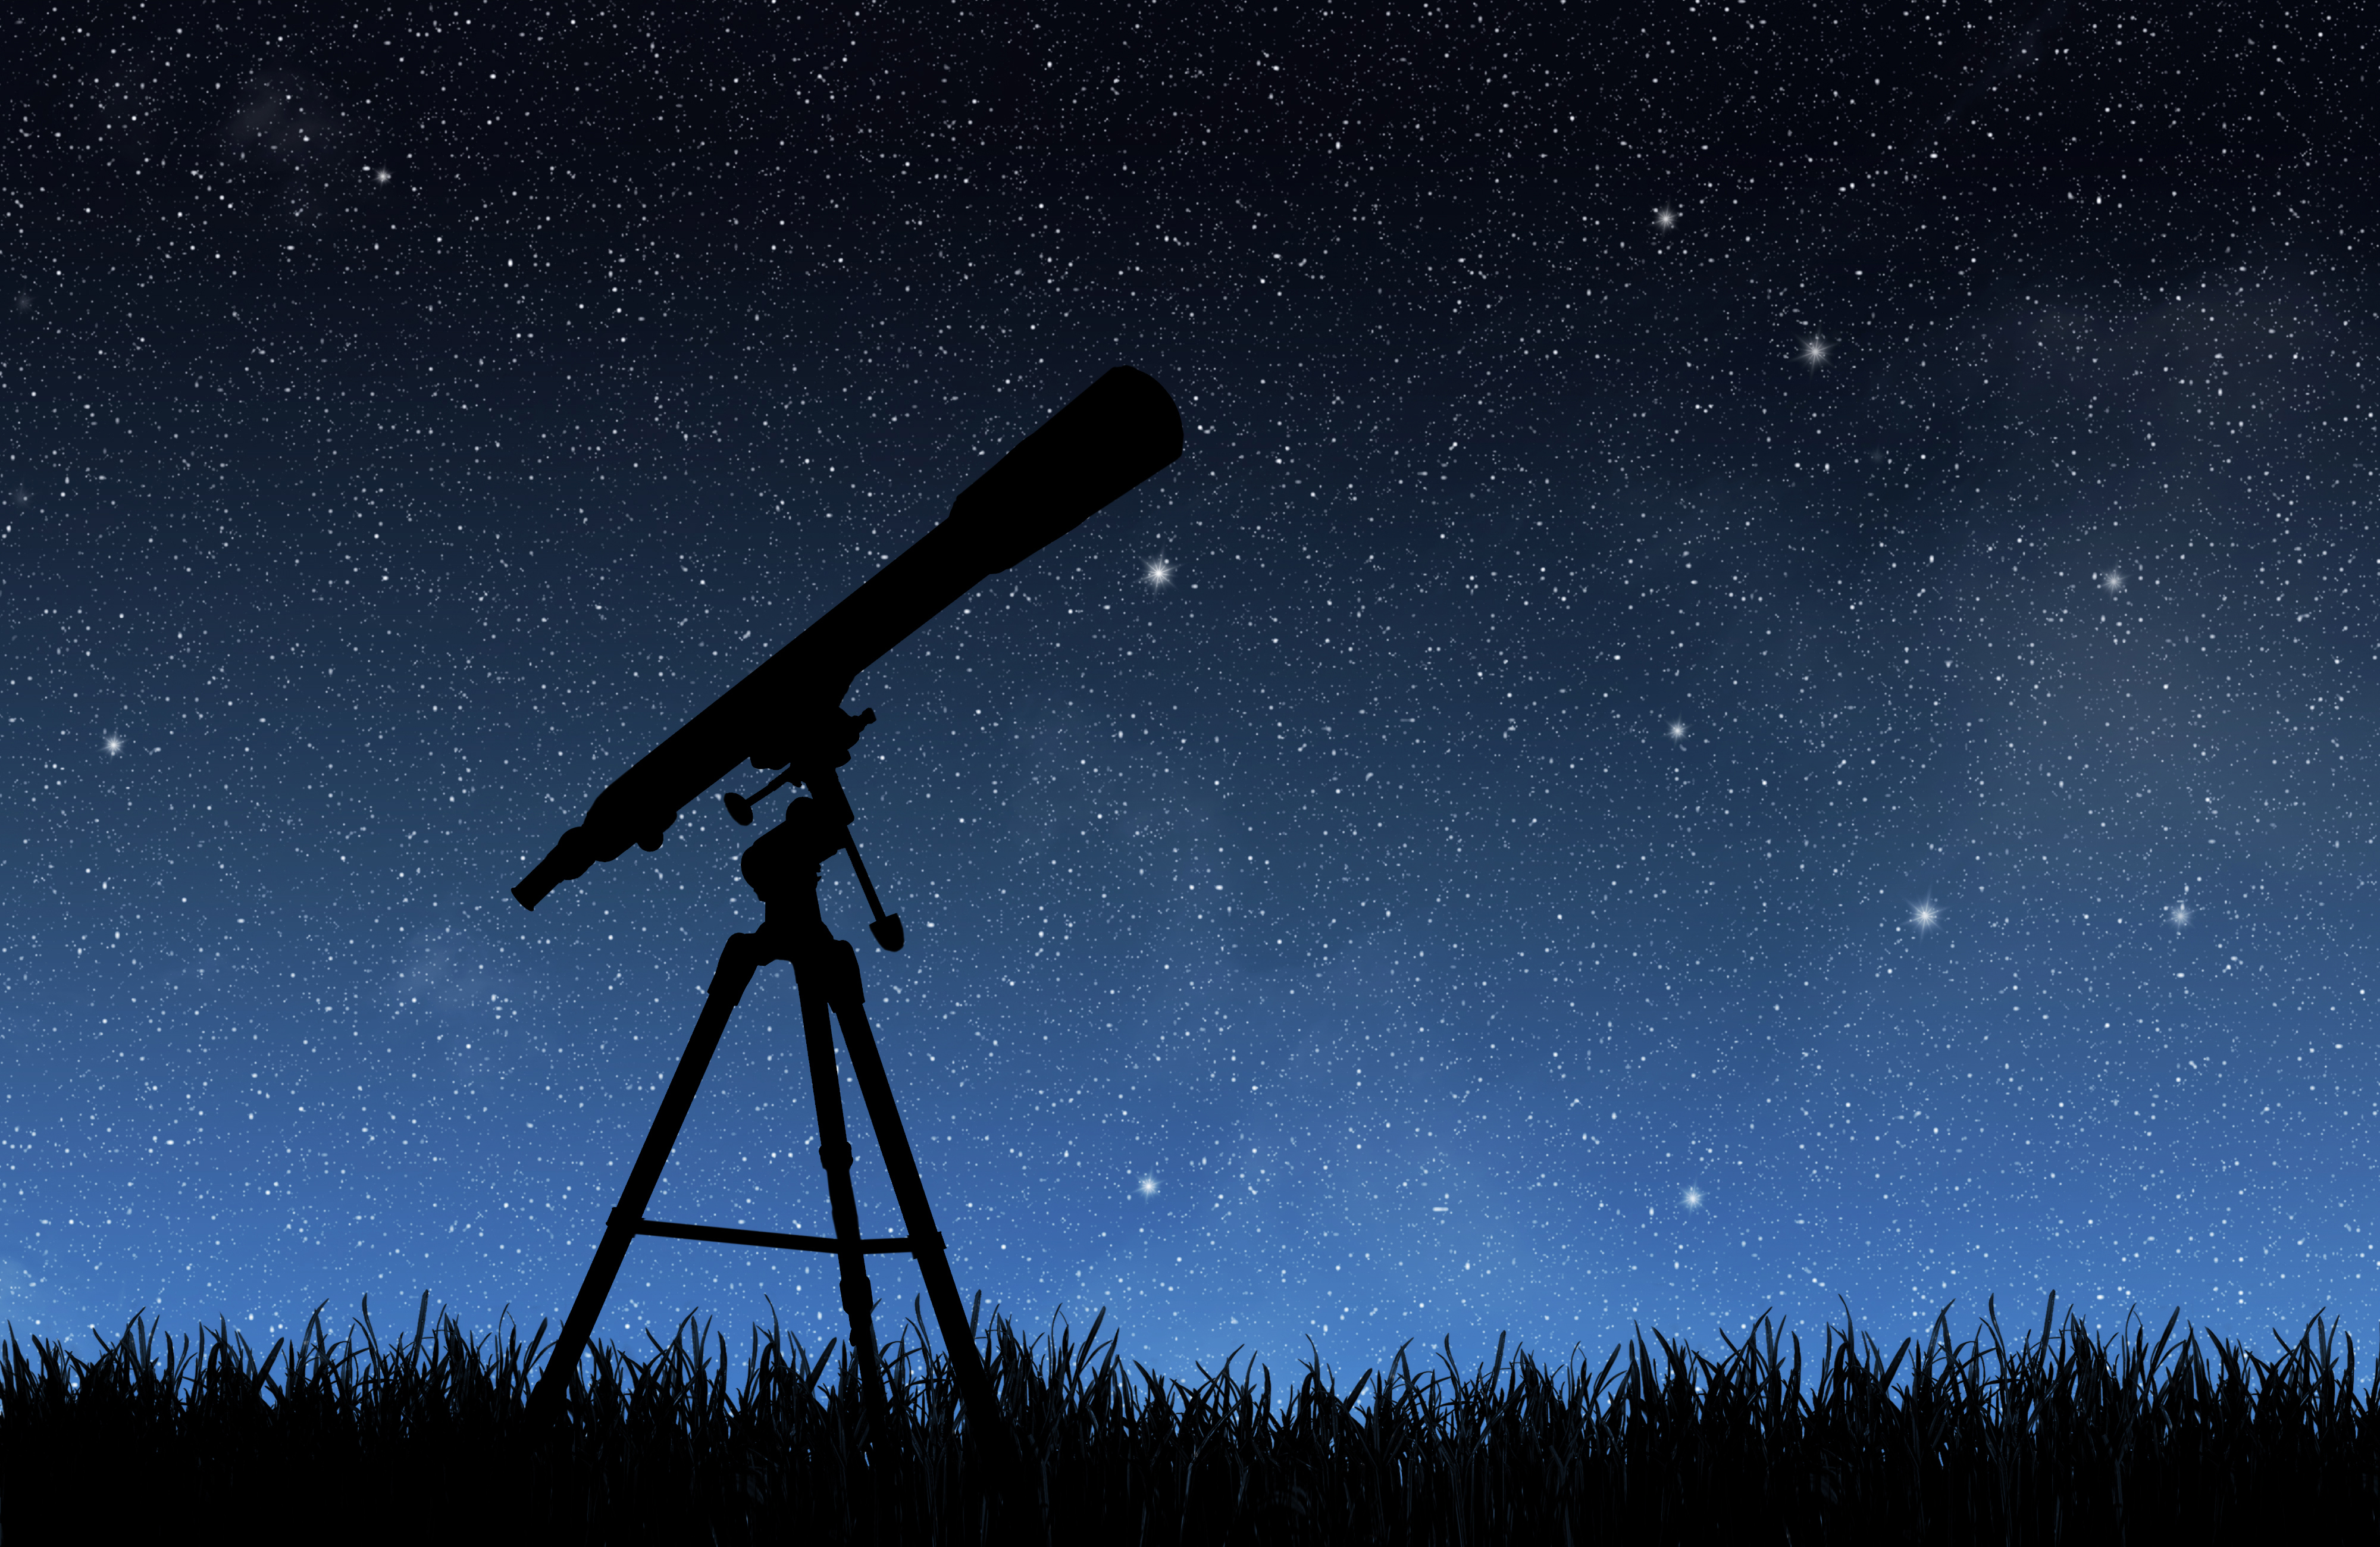 Telescope, sky and stars